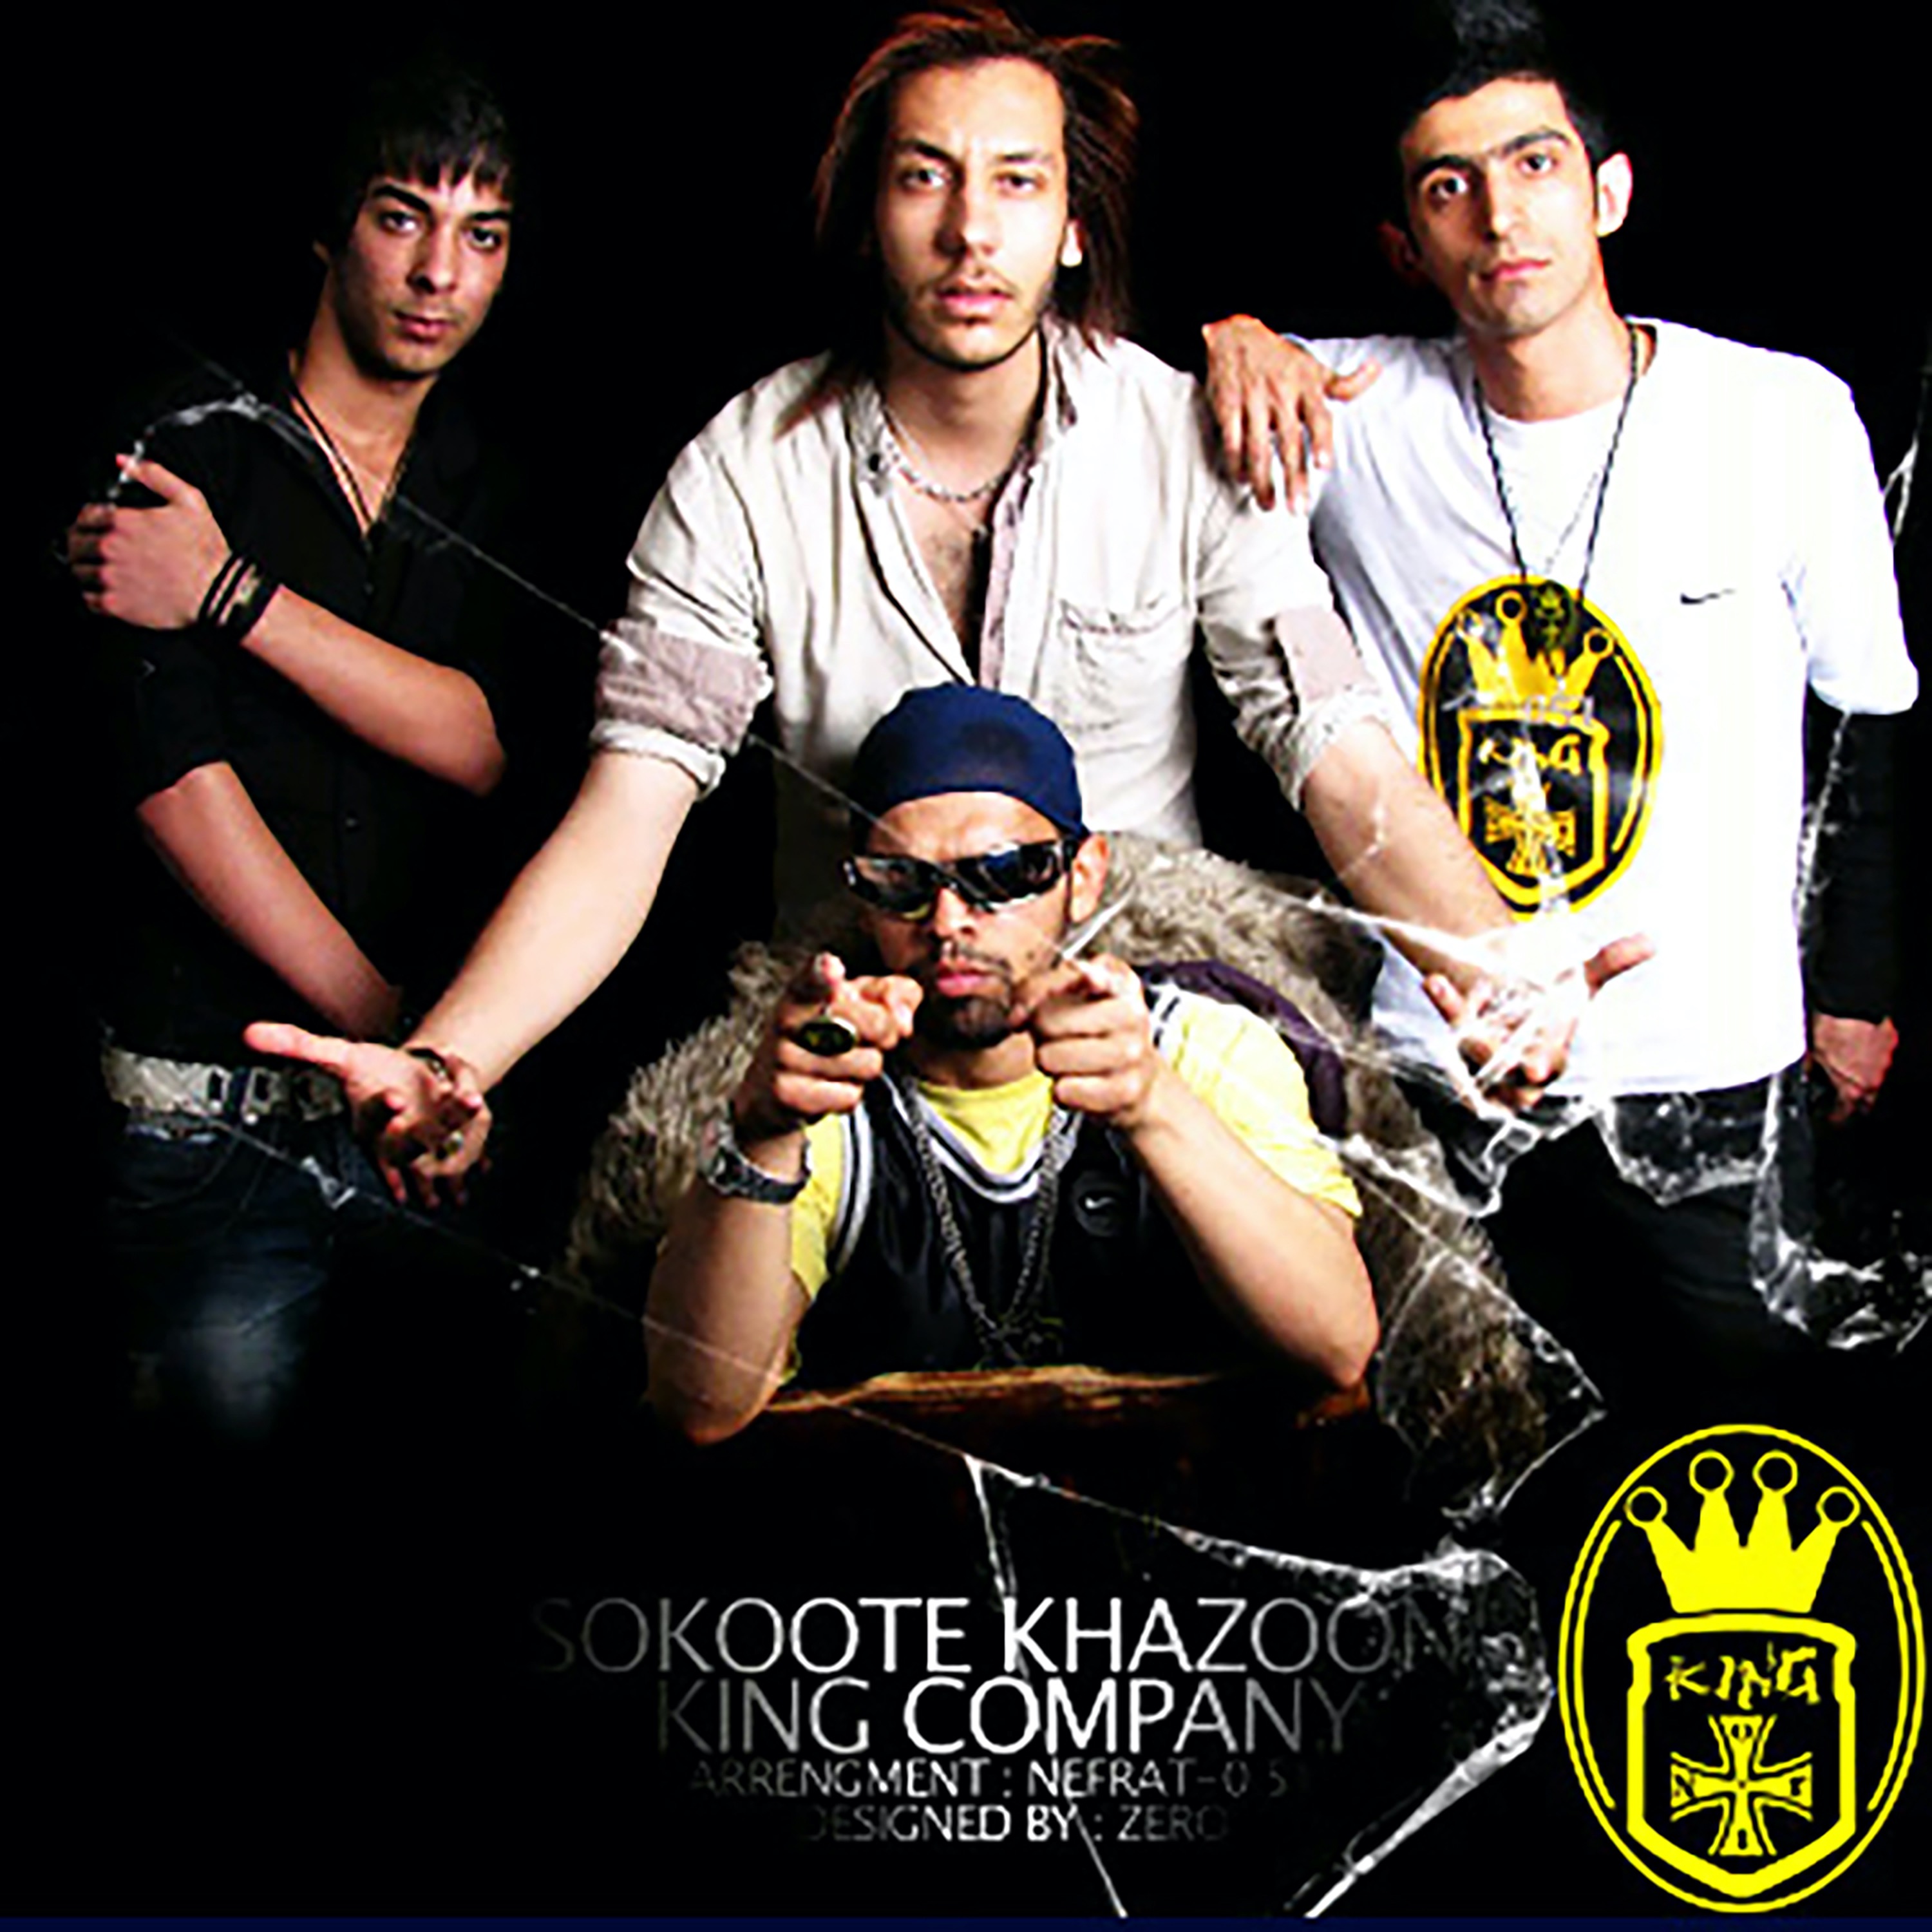  دانلود آهنگ جدید رُظیم - سکوت خزون | Download New Music By Reza Rozim - Sokoote Khazoon (feat. Mojtaba & Nefrat 051)